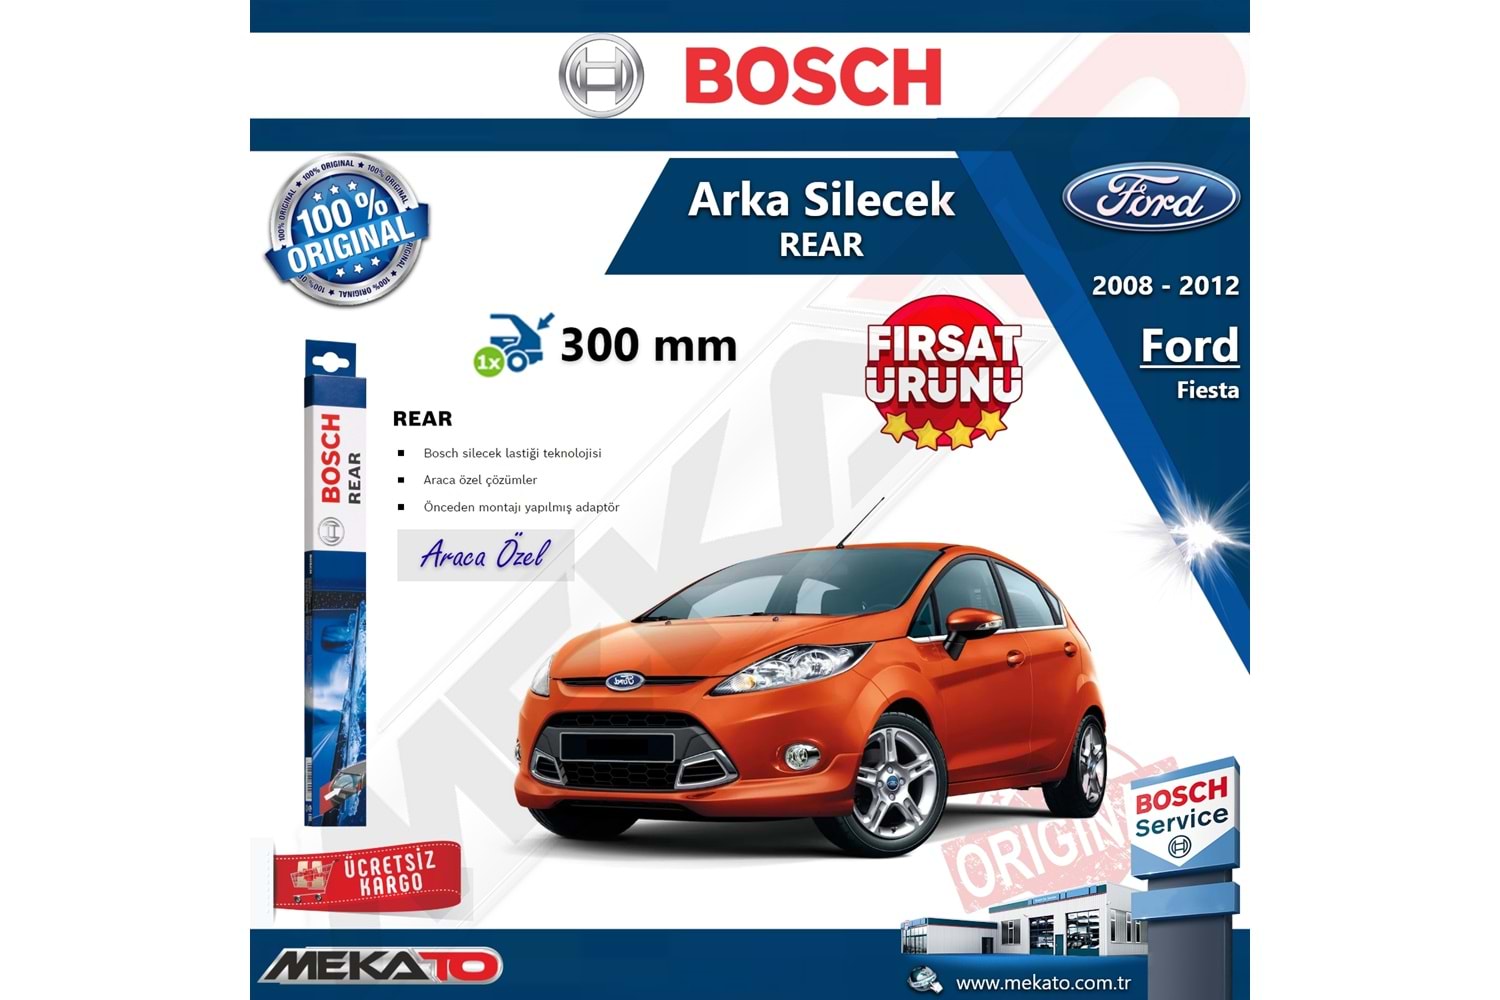 Ford Fiesta Arka Silecek Bosch Rear 2008-2012